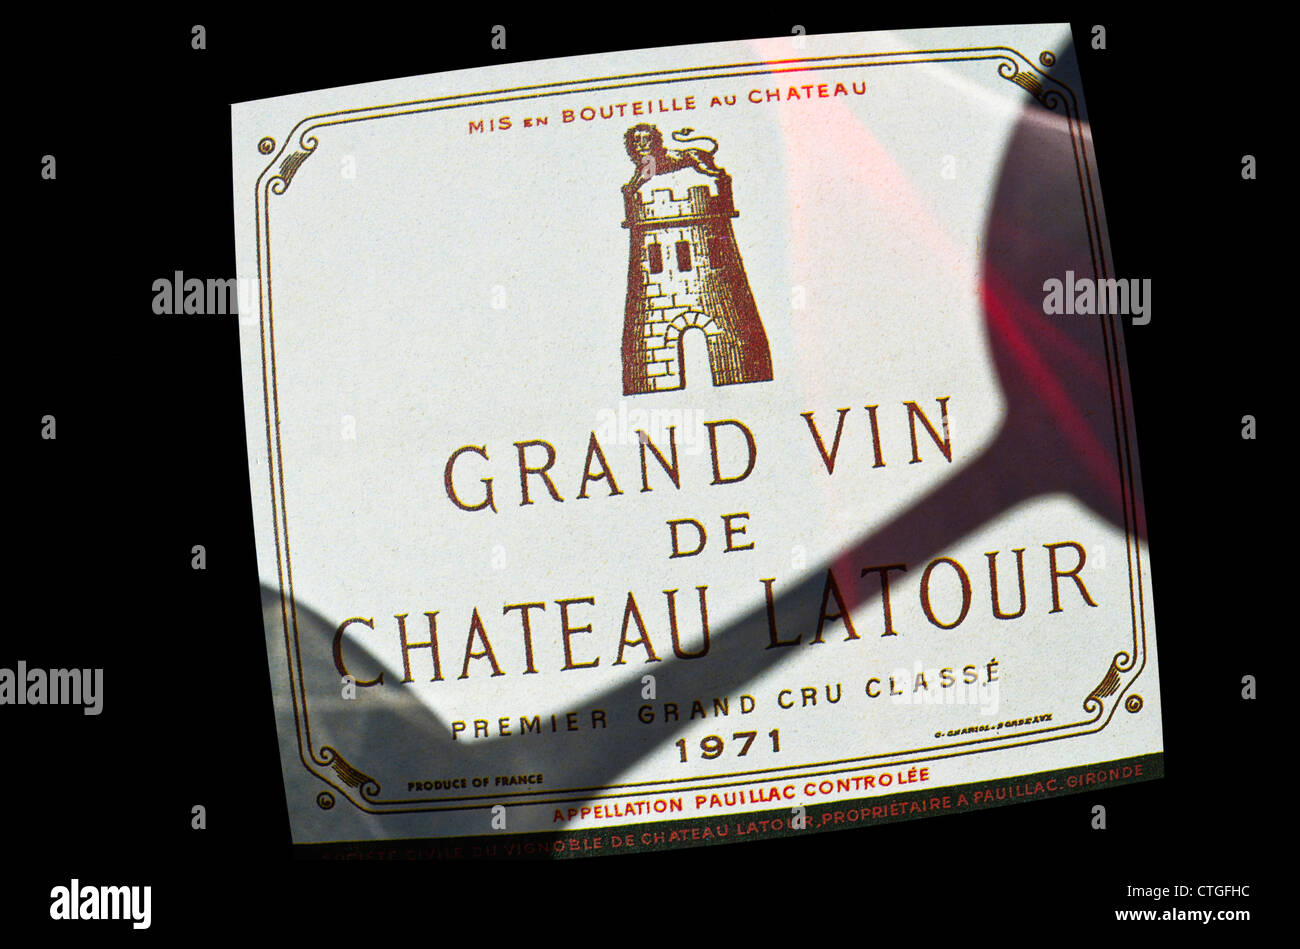 Chateau Latour ombra di un bicchiere di degustazione di vino che cade su etichetta di raffinato Chateau Latour Premier Grand cru classe French Bordeaux rosso vino 1971 Foto Stock